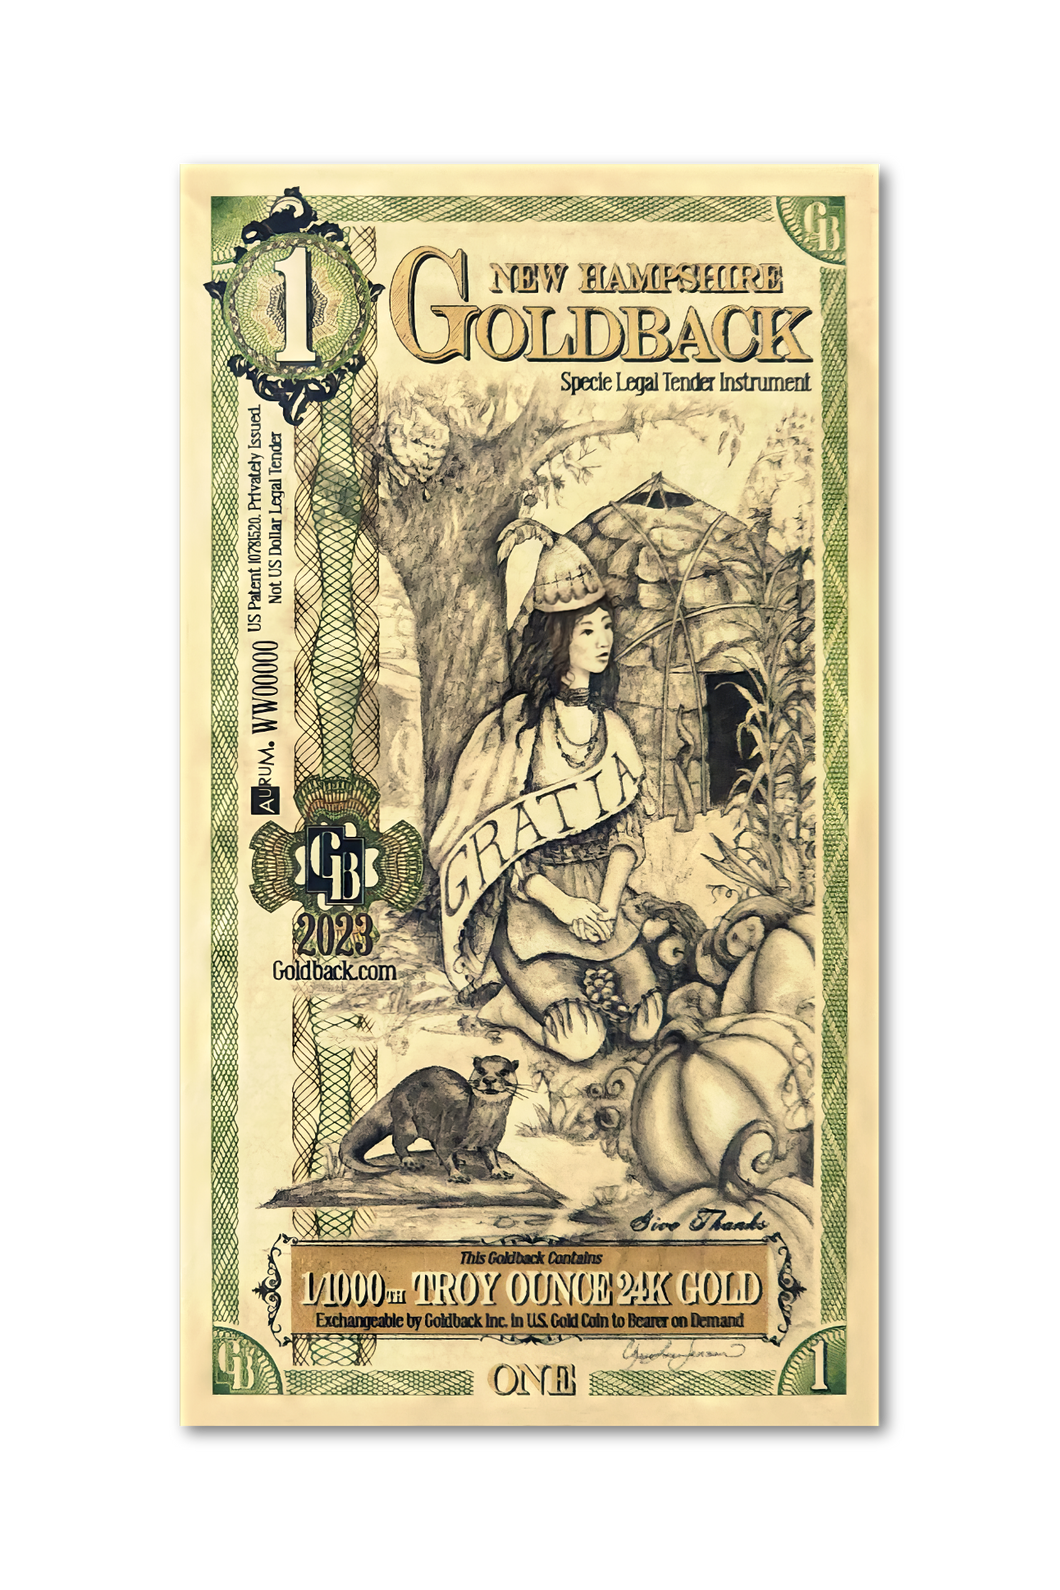 1 New Hampshire Goldback (20 Pack) - Aurum Gold Note (24k)- Zion Metals